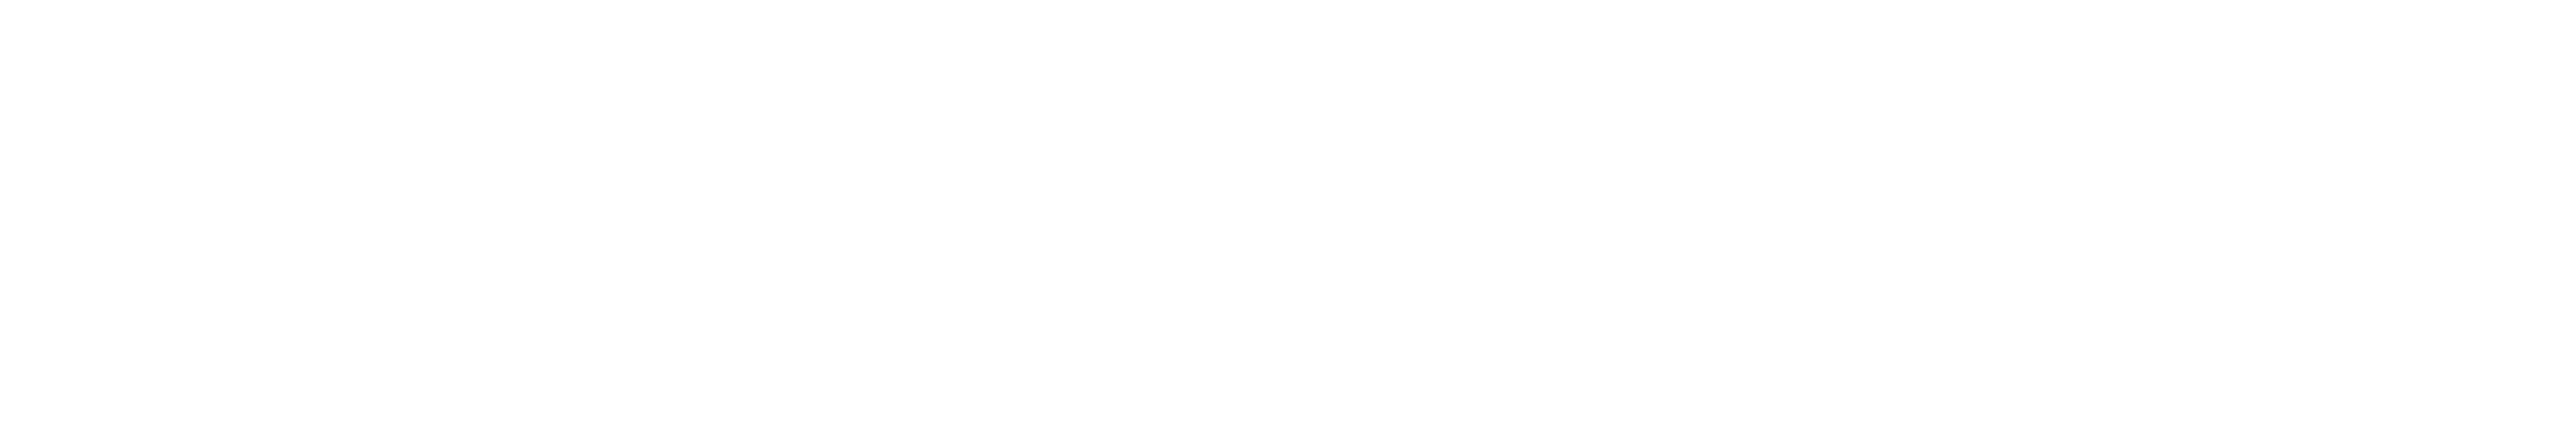 Daily Report / ALM / Law.com logo